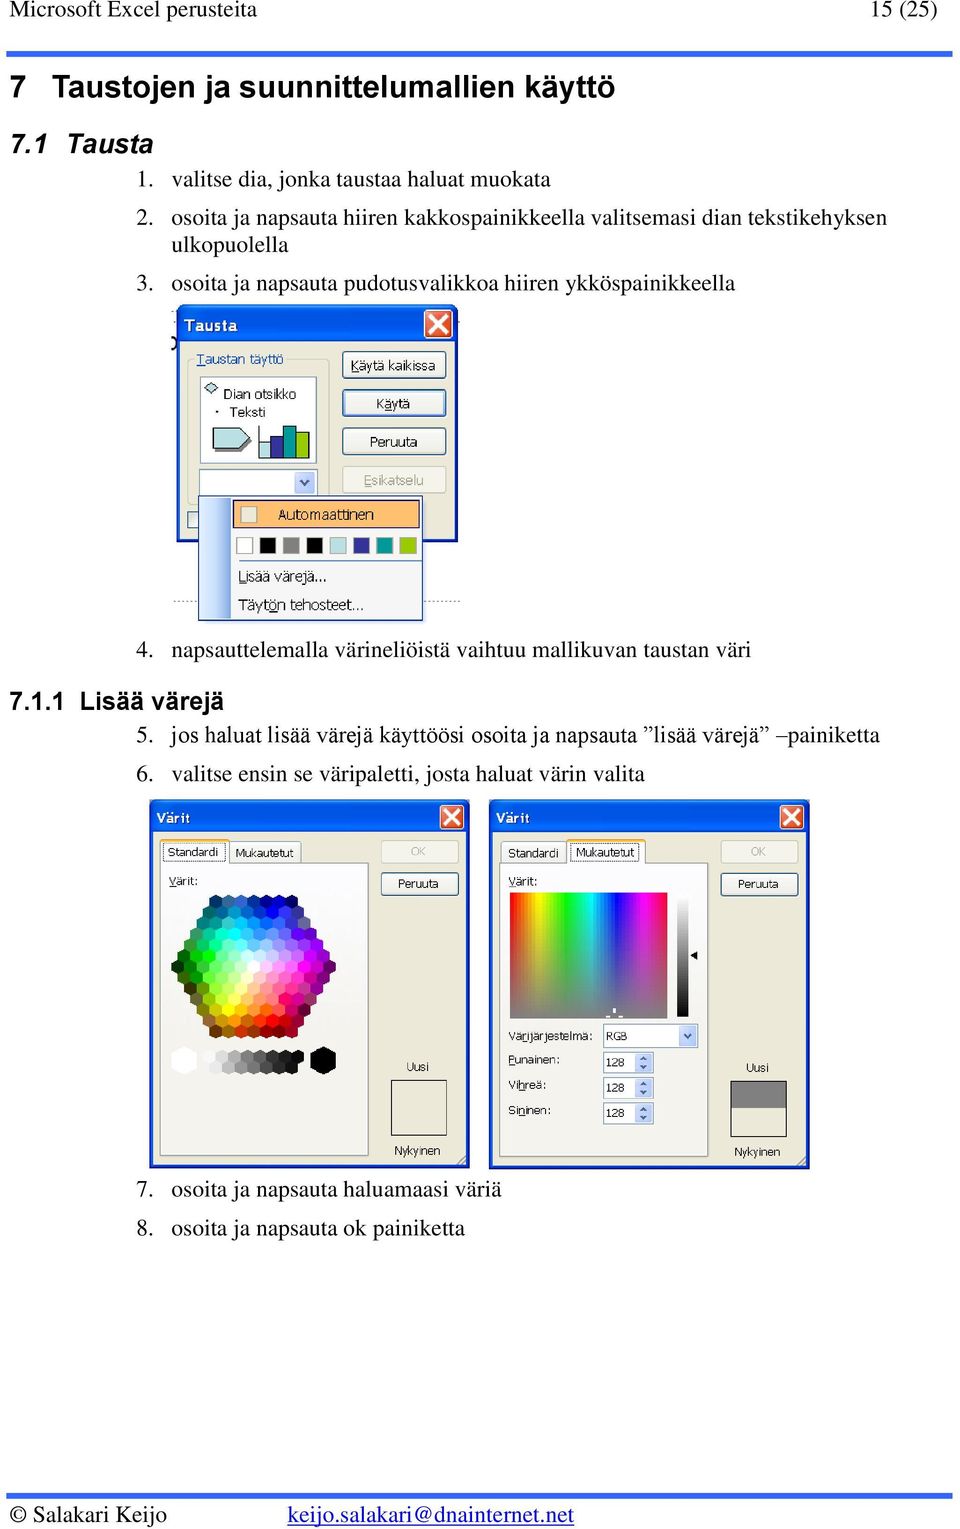 osoita ja napsauta pudotusvalikkoa hiiren ykköspainikkeella 4. napsauttelemalla värineliöistä vaihtuu mallikuvan taustan väri 7.1.1 Lisää värejä 5.